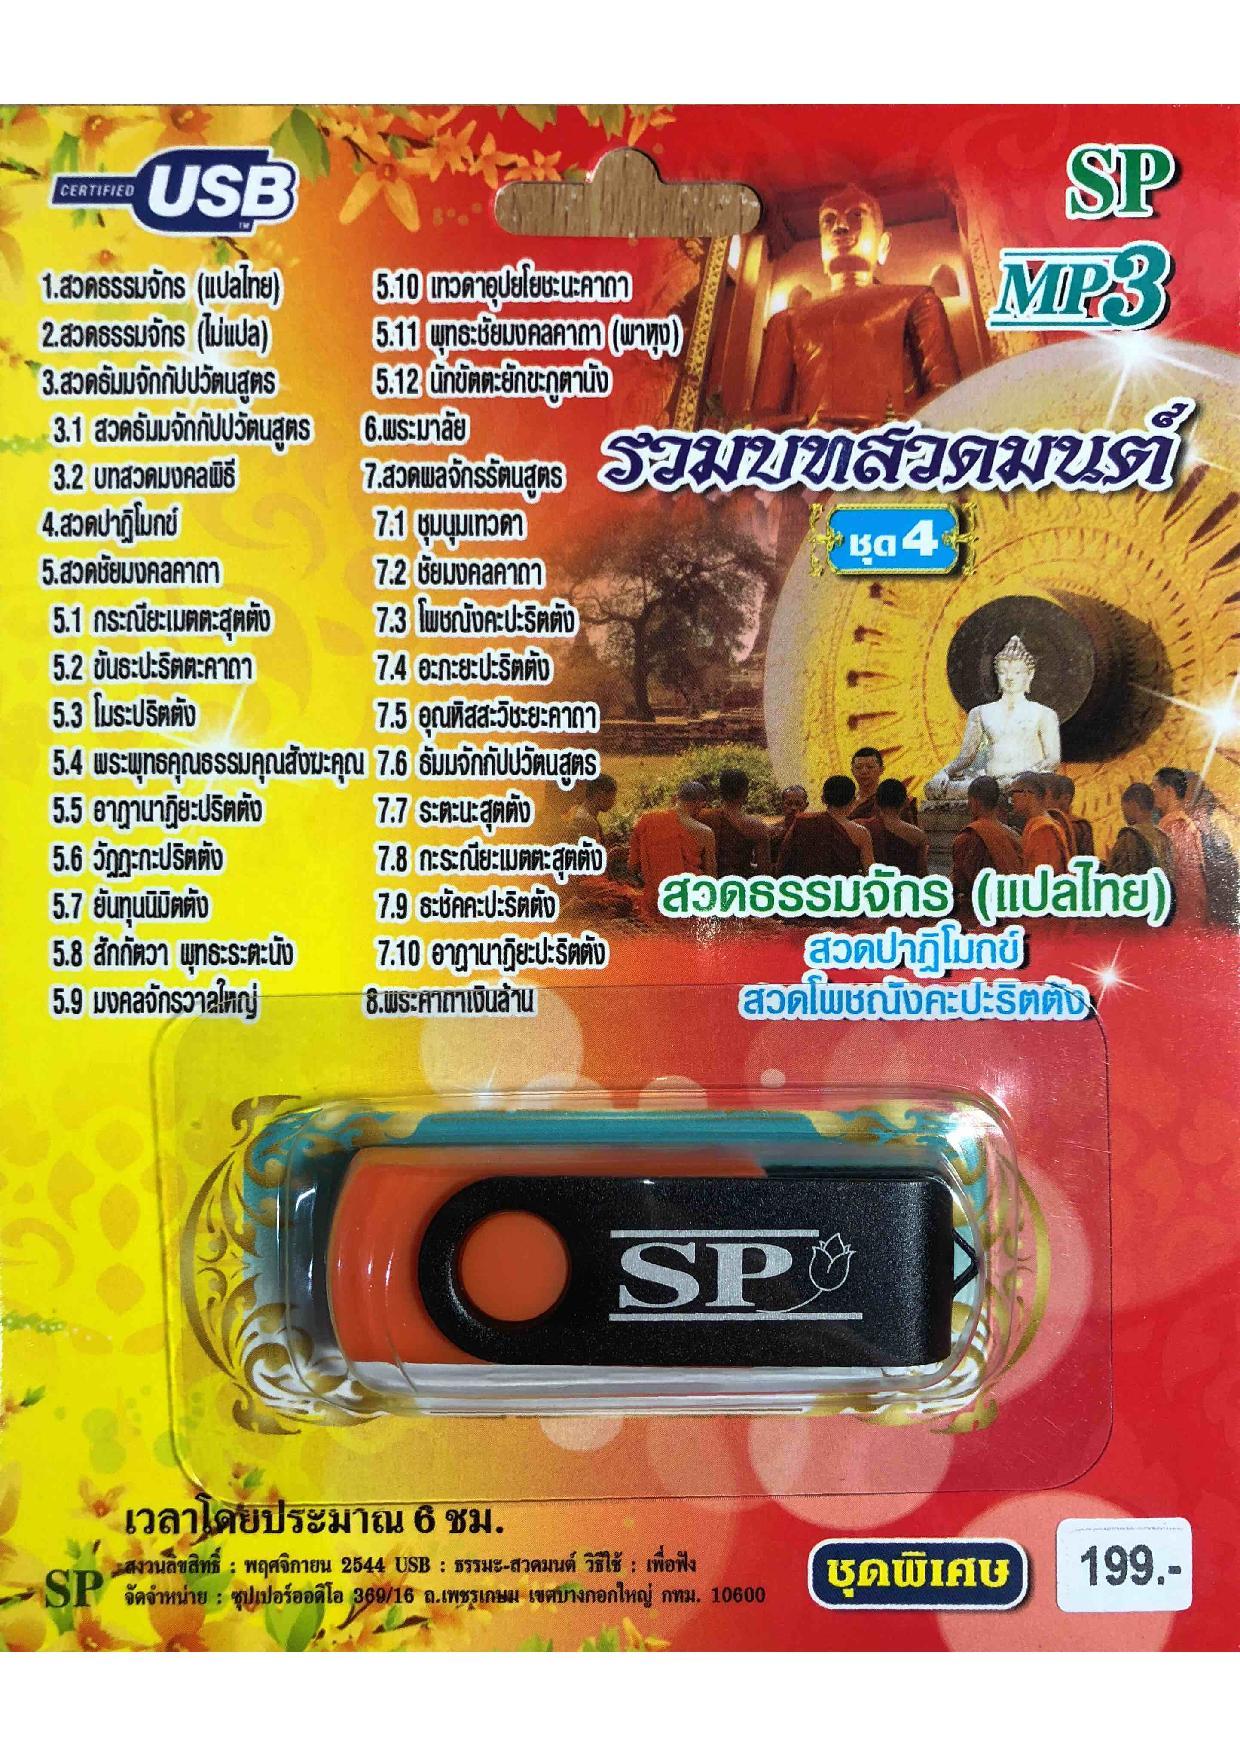 แฟลชไดร์ฟ Flash Drive เพลง MP3 รวมบทสวดมนต์ชุด 4